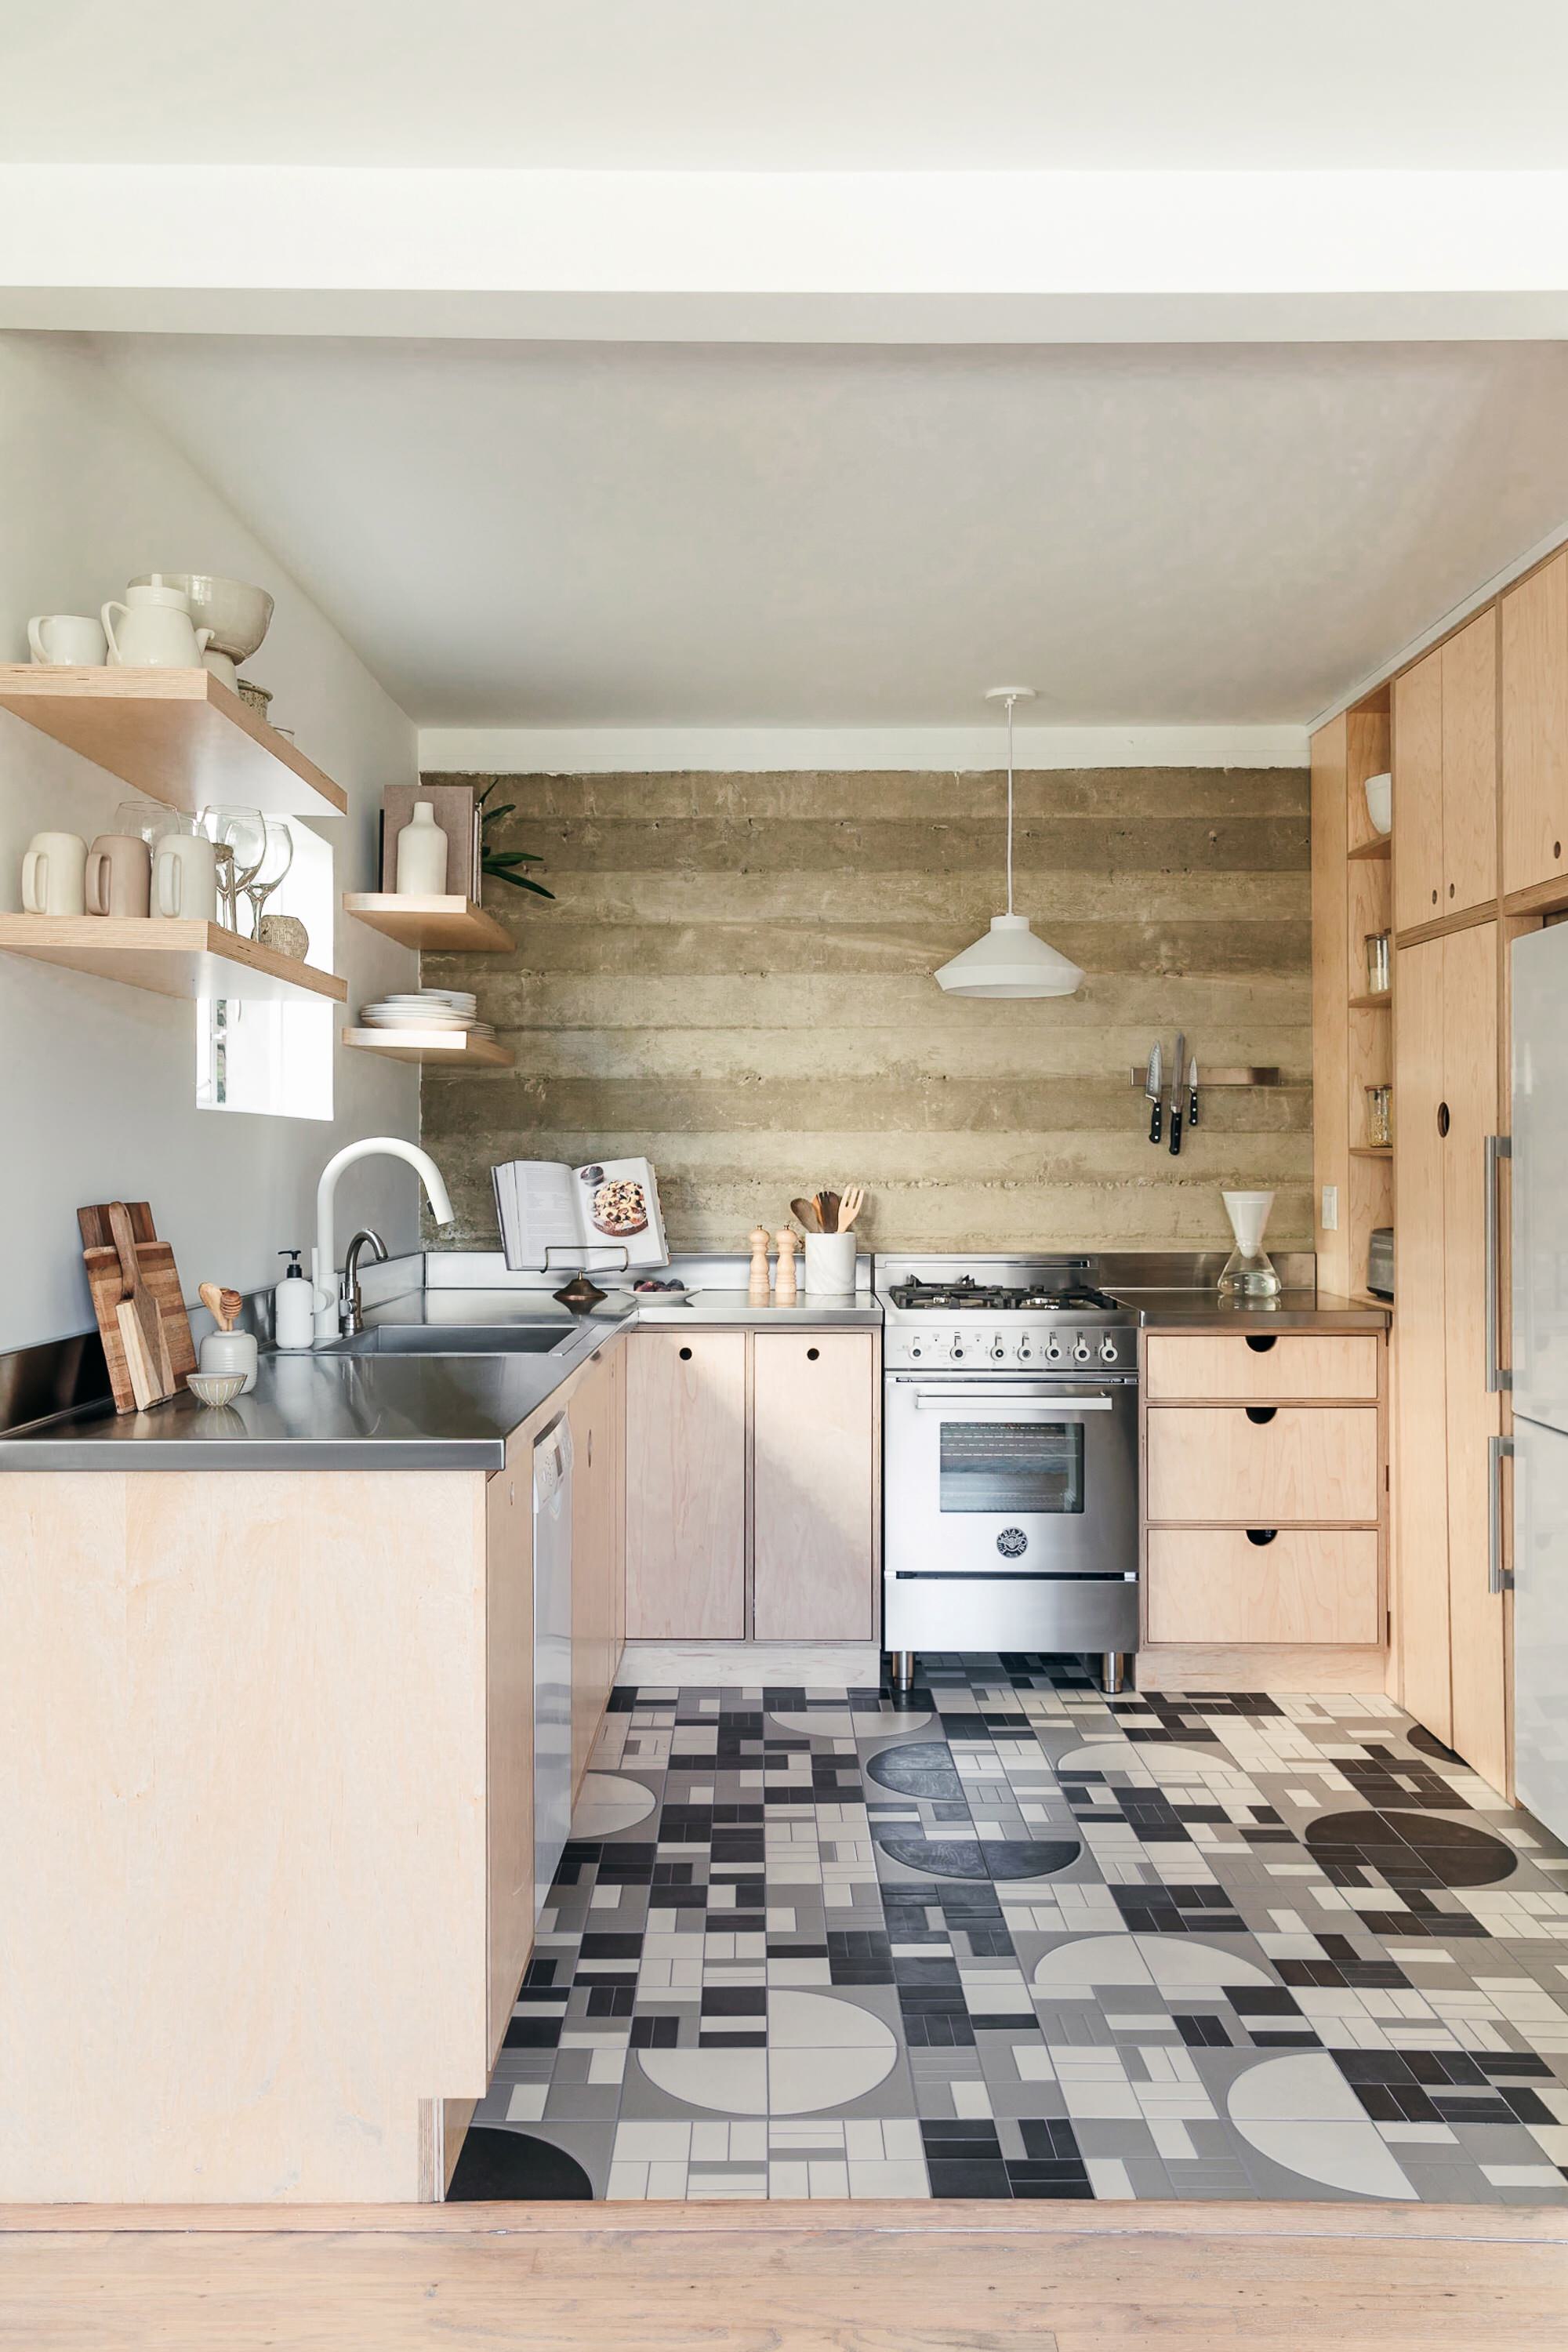 White Tile Floor Kitchen Ideas, Black Vct Tile